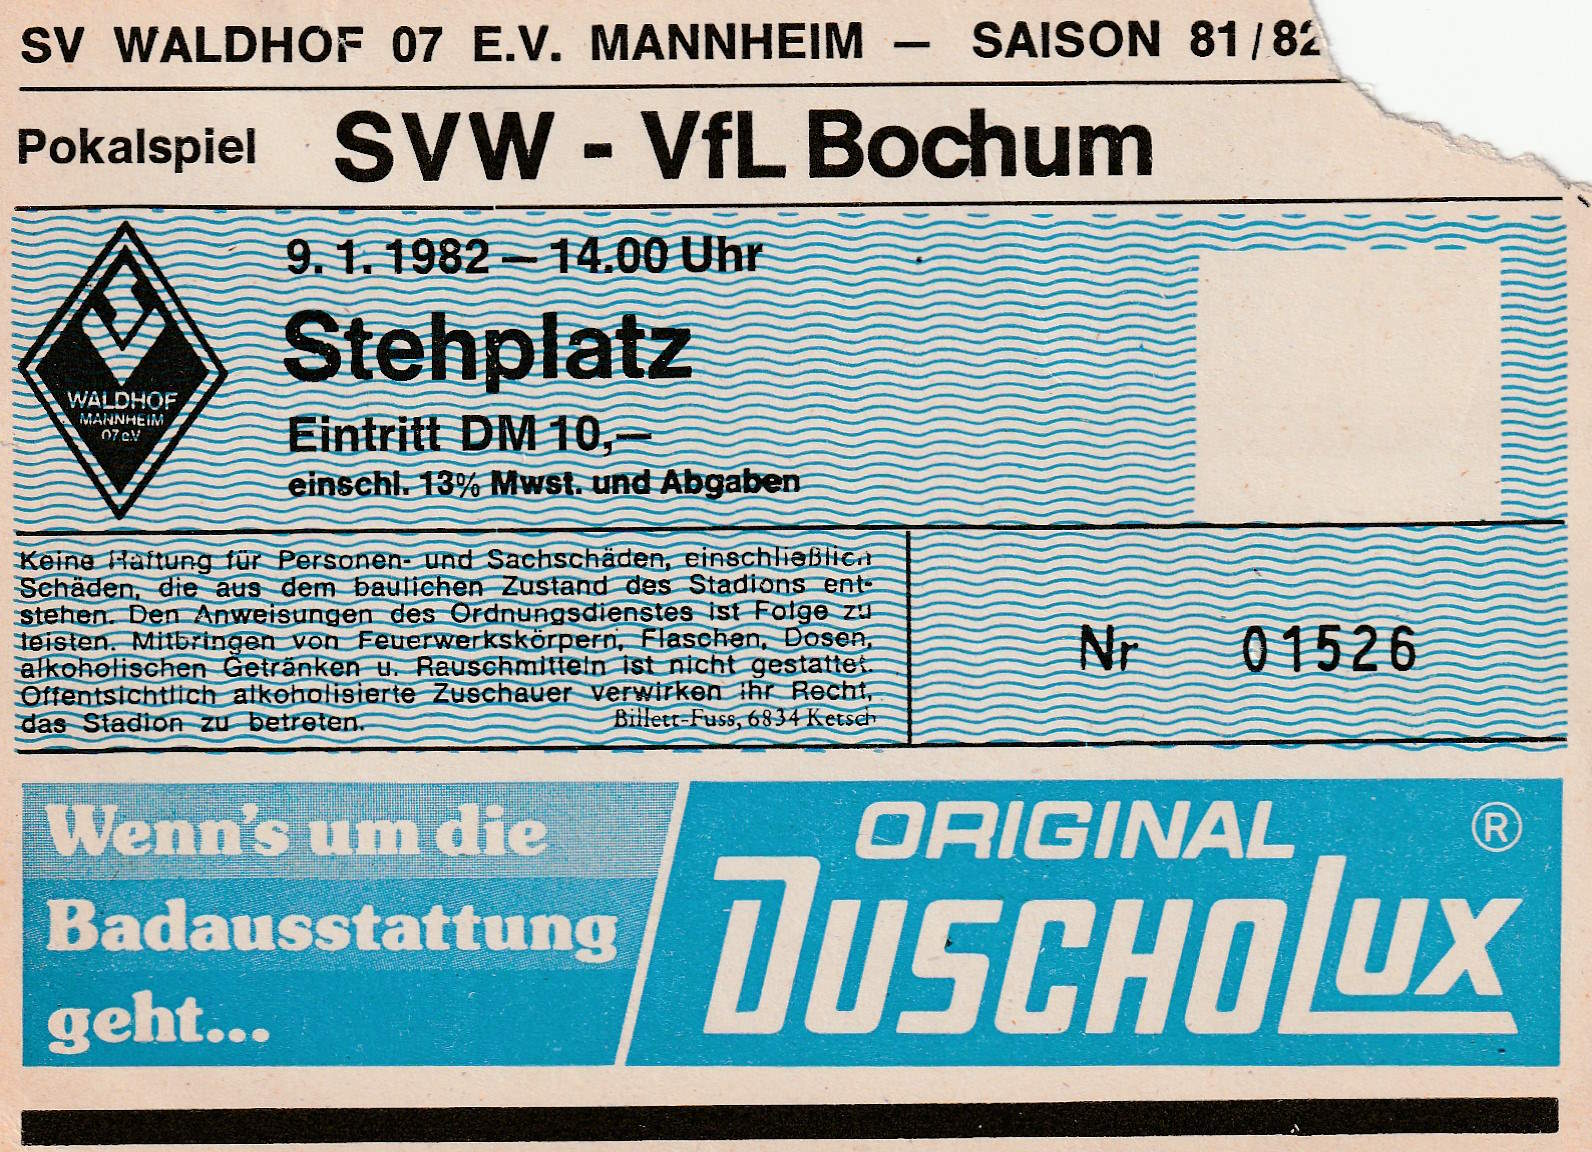 Pokalspiel SV Waldhof - VfL Bochum 81 82.jpg